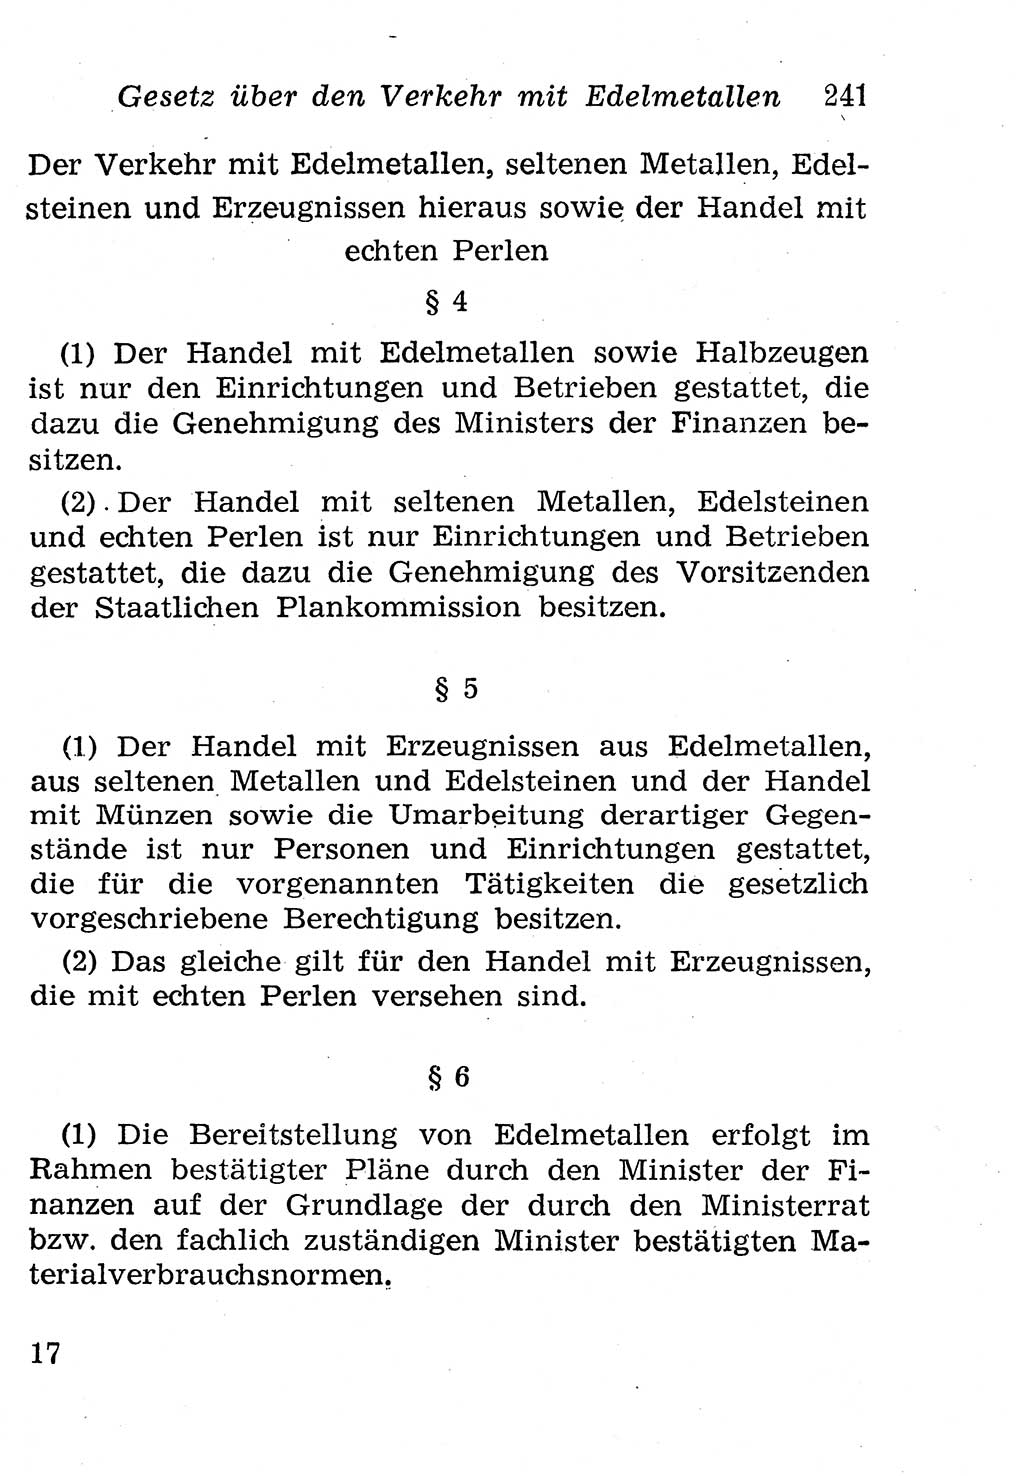 Strafgesetzbuch (StGB) und andere Strafgesetze [Deutsche Demokratische Republik (DDR)] 1958, Seite 241 (StGB Strafges. DDR 1958, S. 241)